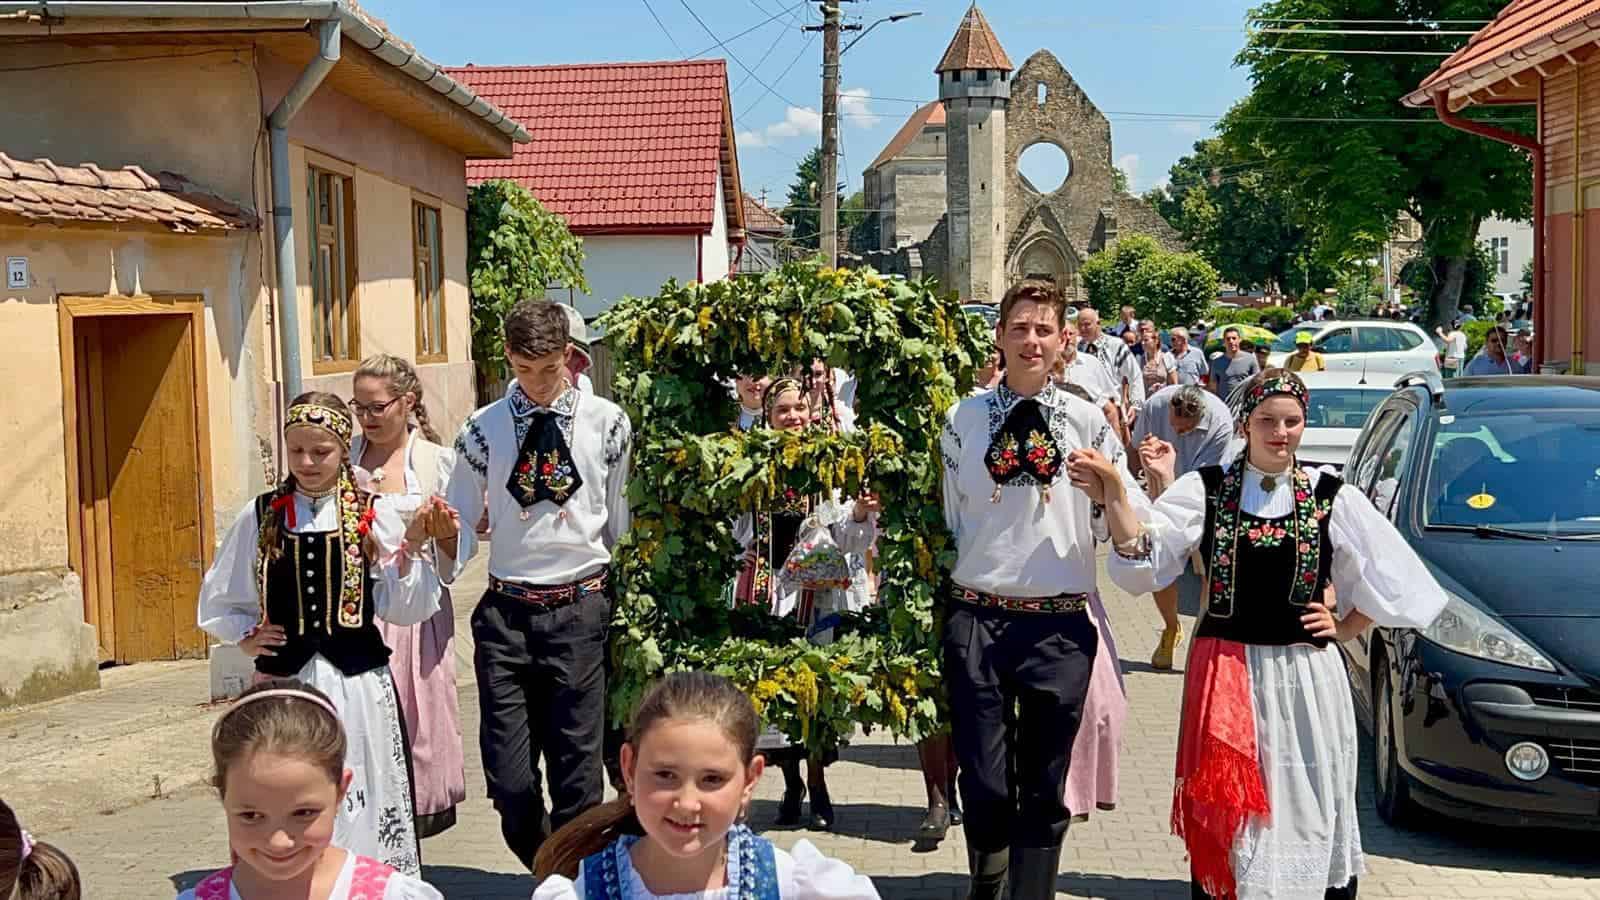 zeci de tineri în costume săseși au sărbătorit „kronenfest” la cârța (foto)